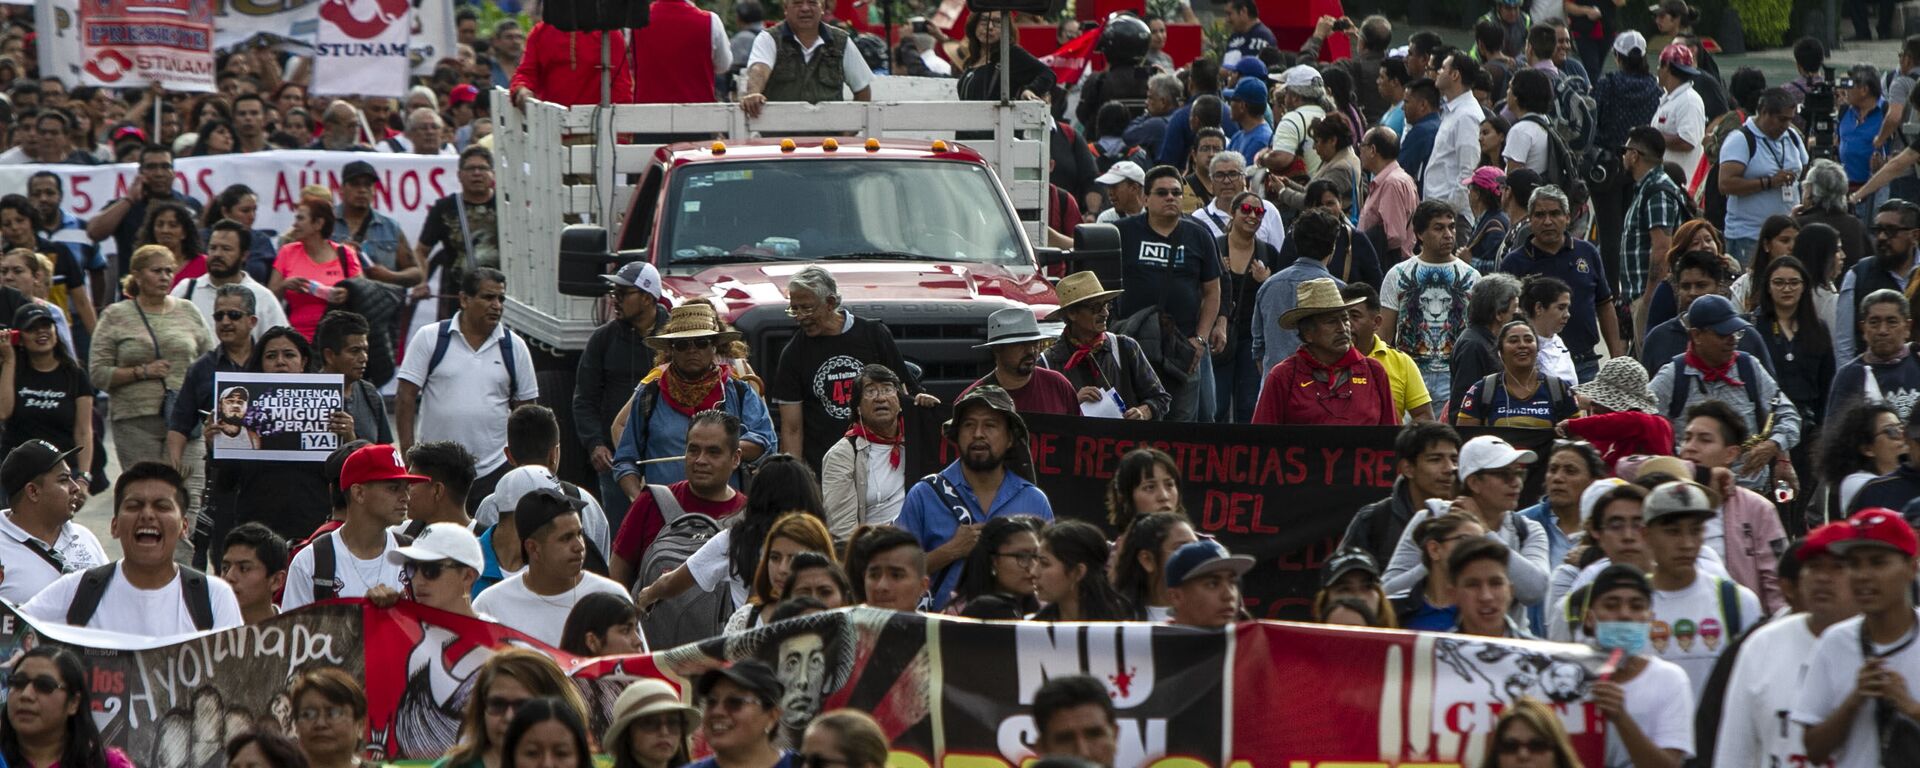 Asistentes a la manifestación en ciudad de México por los cinco años de la desaparición forzada de los 43 estudiantes de la normal rural de Ayotzinapa en el anti-monumento que recuerdo este crimen.  - Sputnik Mundo, 1920, 02.07.2020